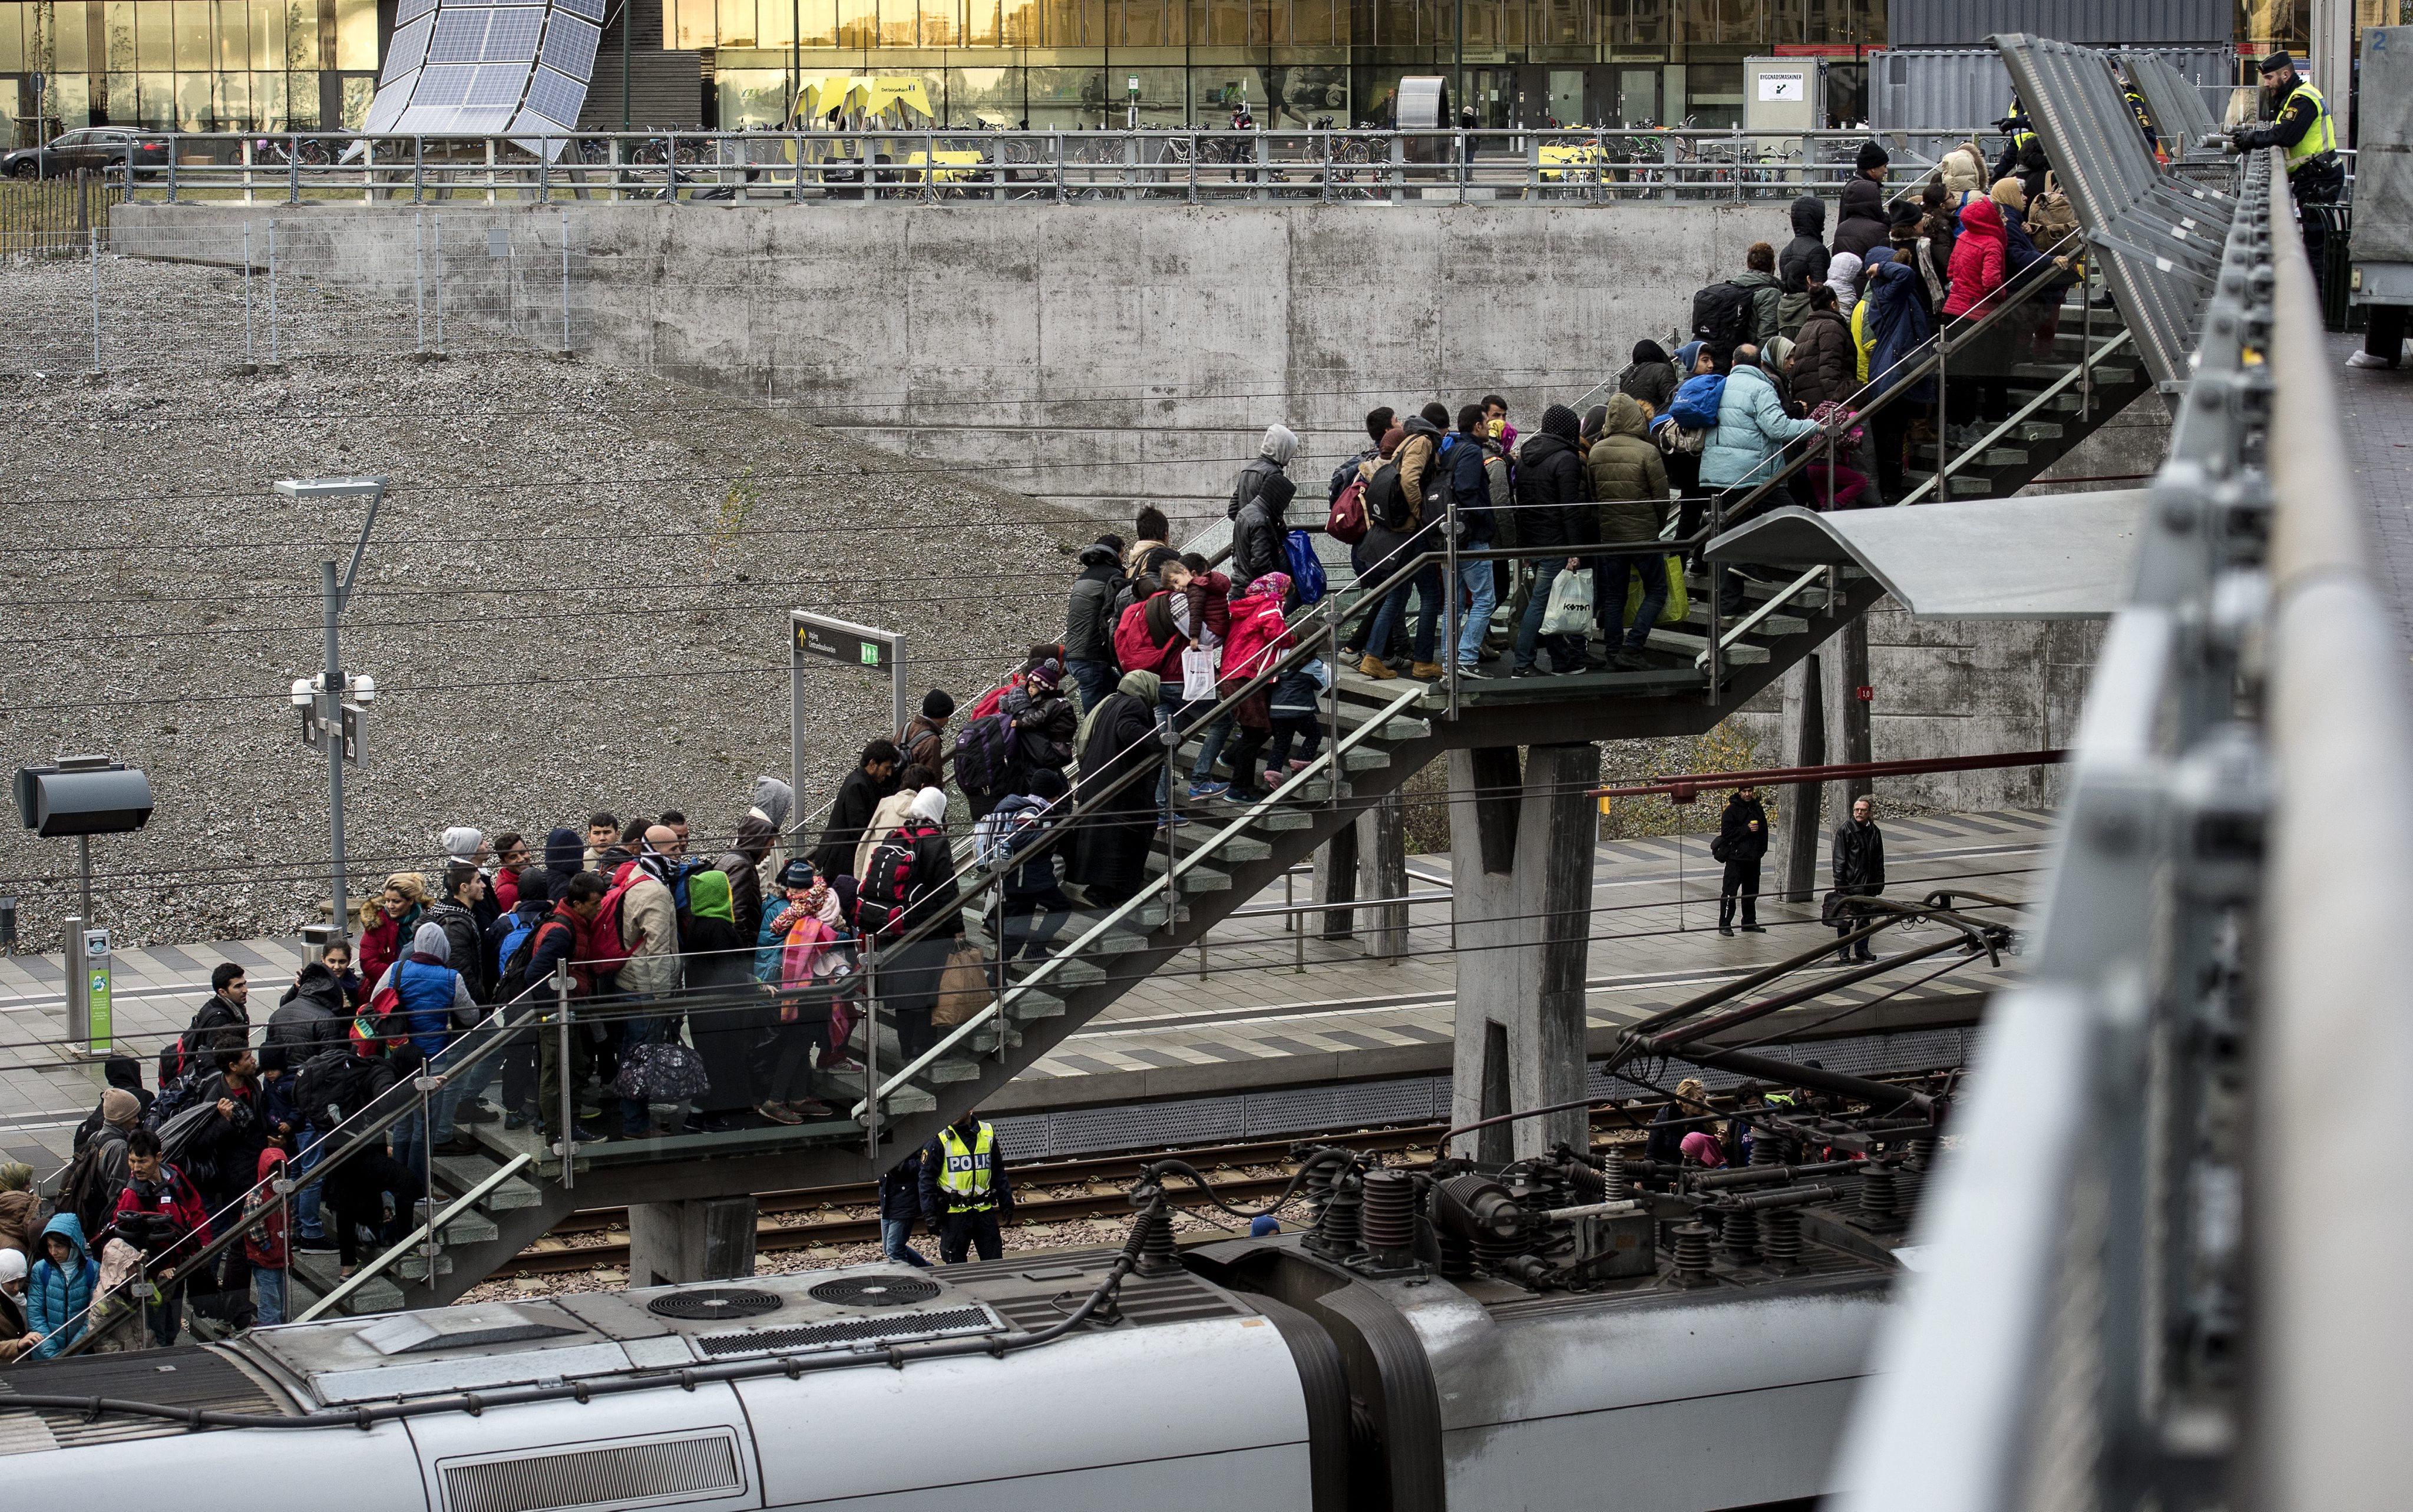 Guvernul danez ii va obliga pe refugiatii care cer azil sa-si doneze bunurile. ONU: Legea va declansa teama si xenofobie